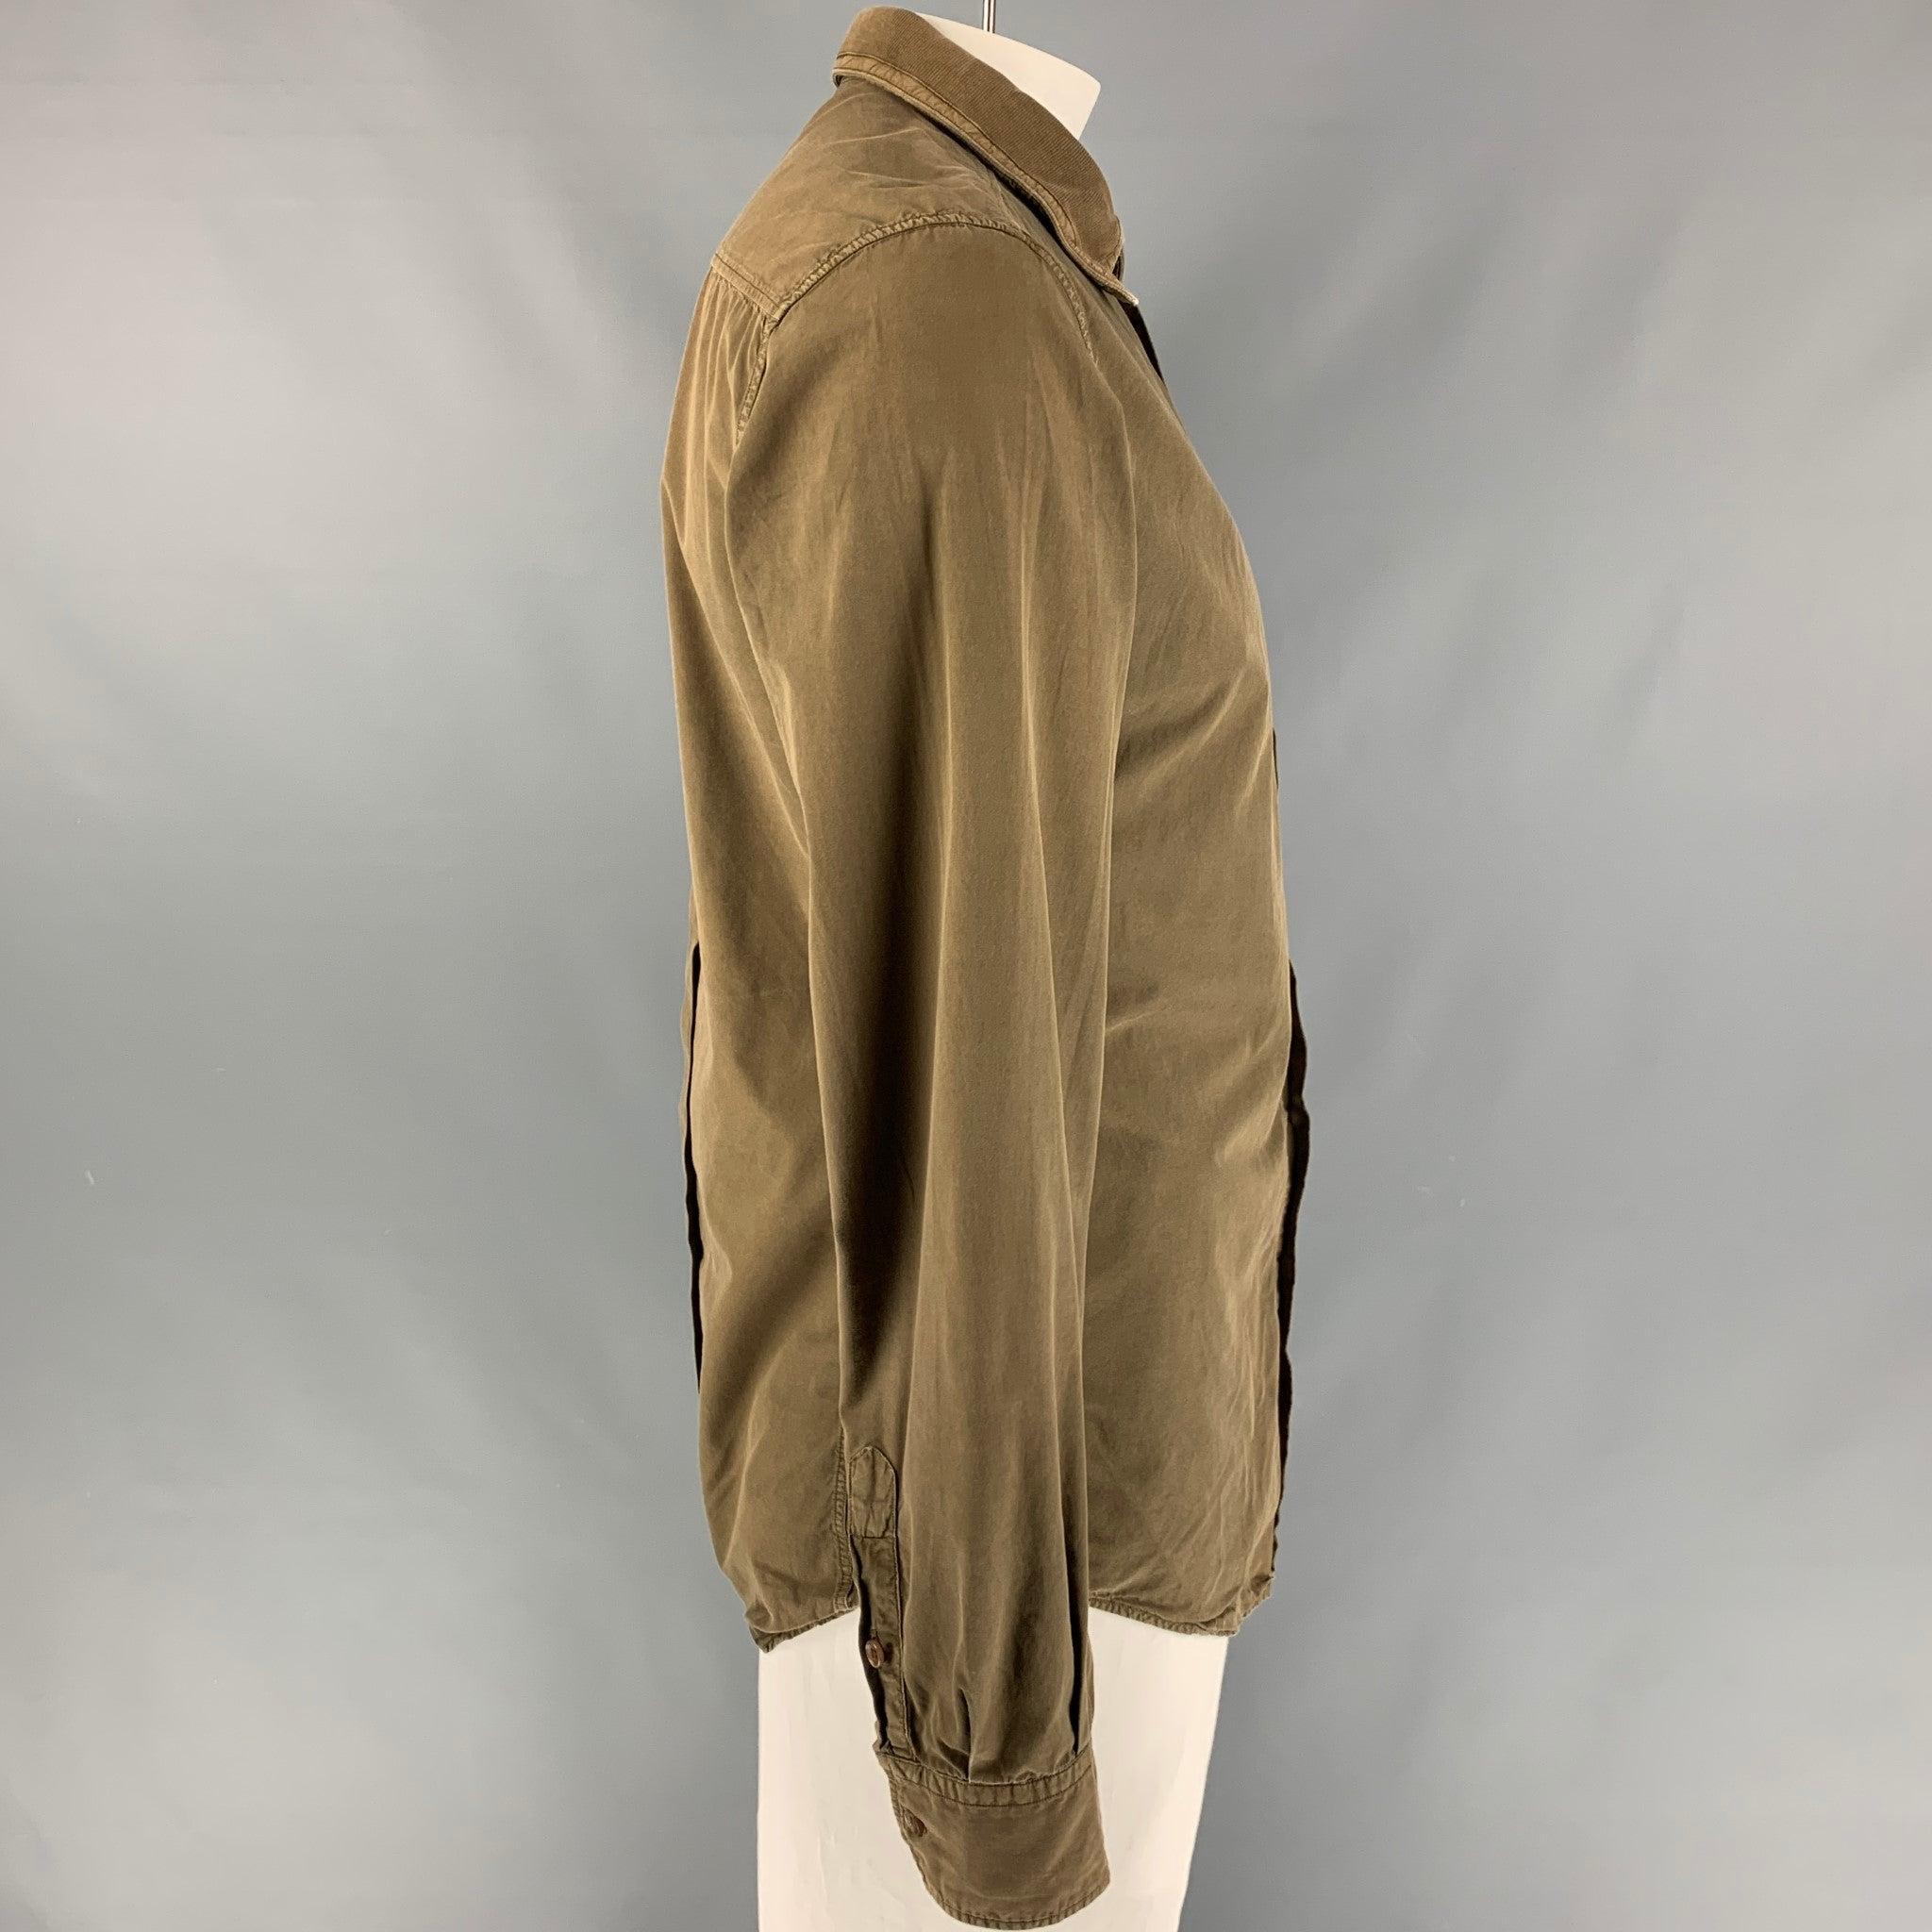 La chemise à manches longues D&G by DOLCE & GABBANA est proposée en coton marron. Elle présente un col rond à texture côtelée et se ferme par un bouton. Bon état d'origine. Signes d'usure modérés. 

Marqué :   52  

Mesures : 
 
Epaule : 28 pouces